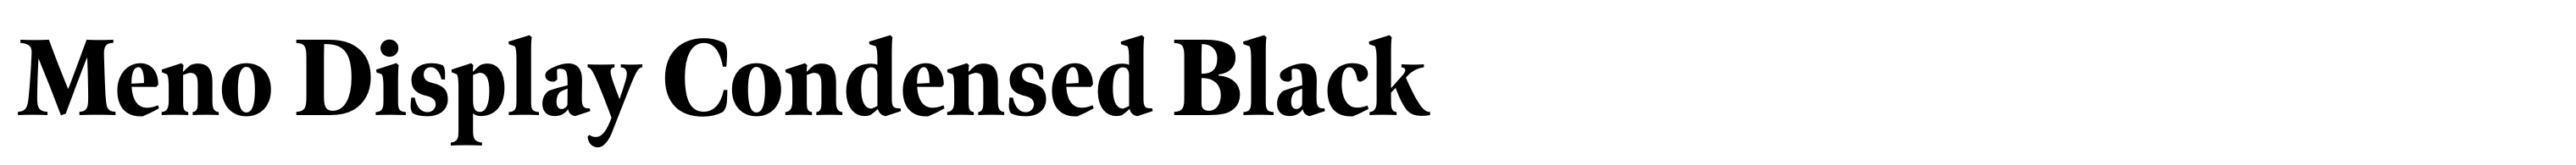 Meno Display Condensed Black